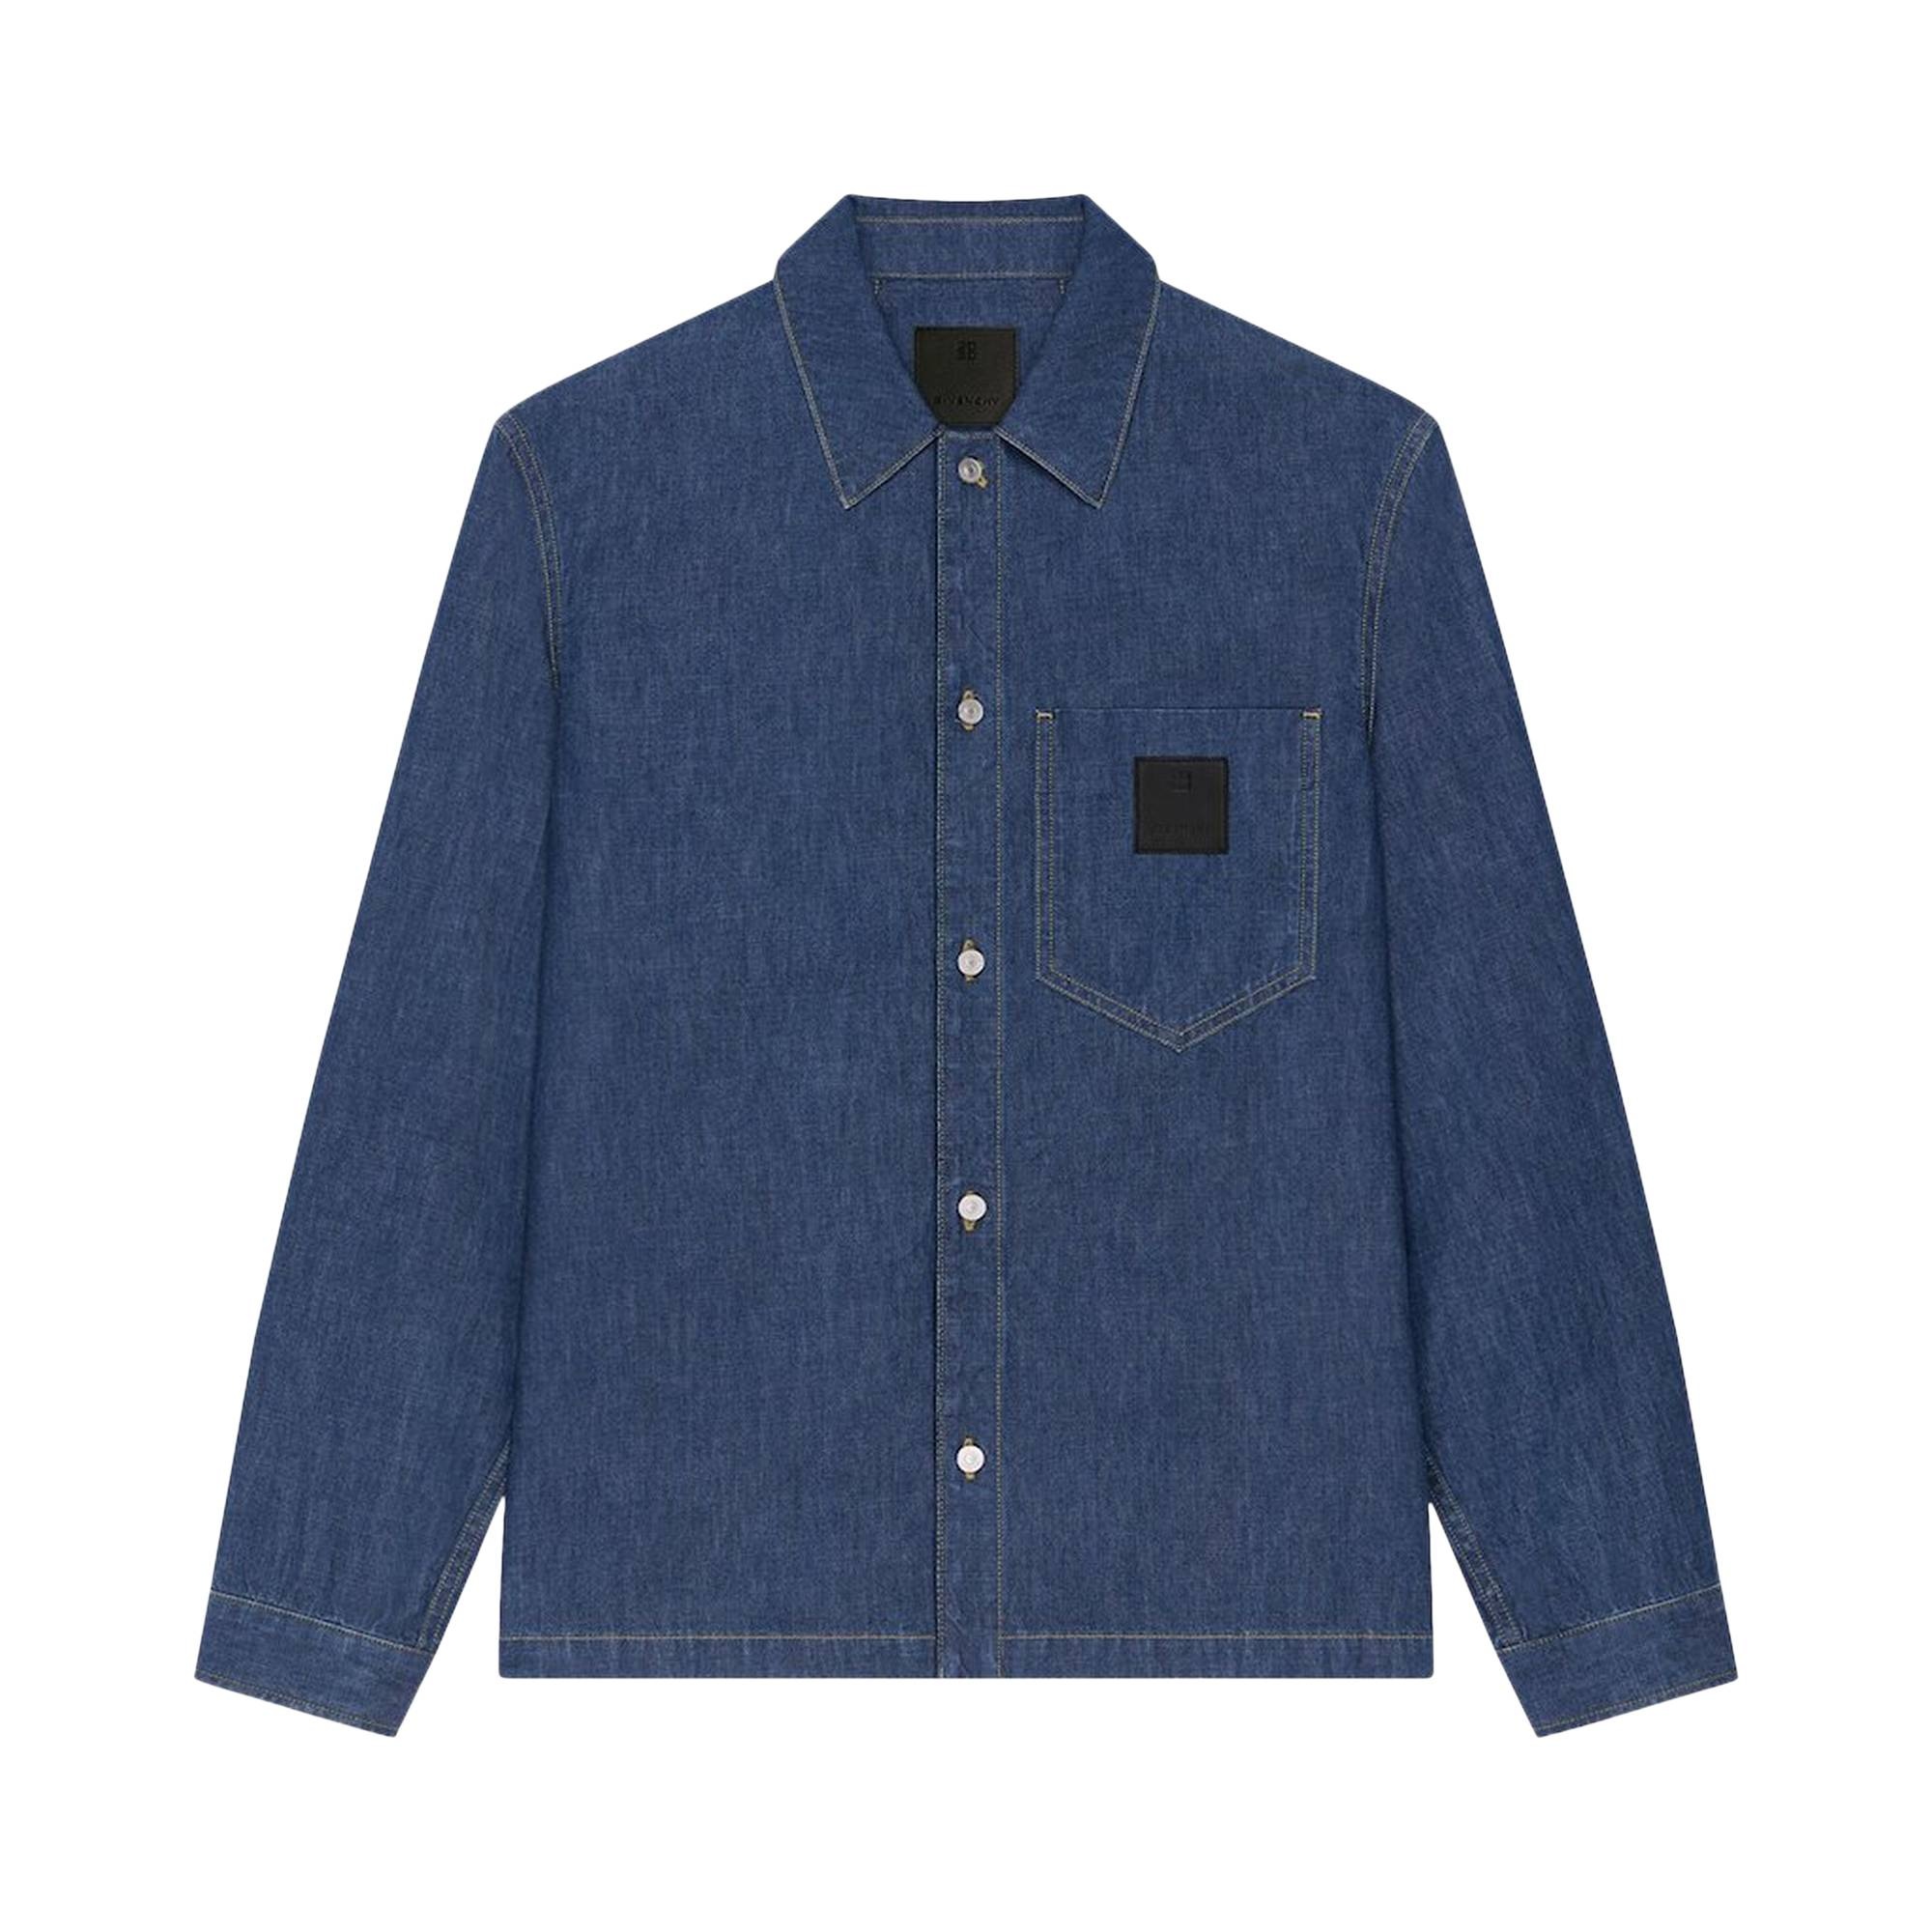 Givenchy Boxy Fit Long-Sleeve Shirt 'Indigo Blue' - 1